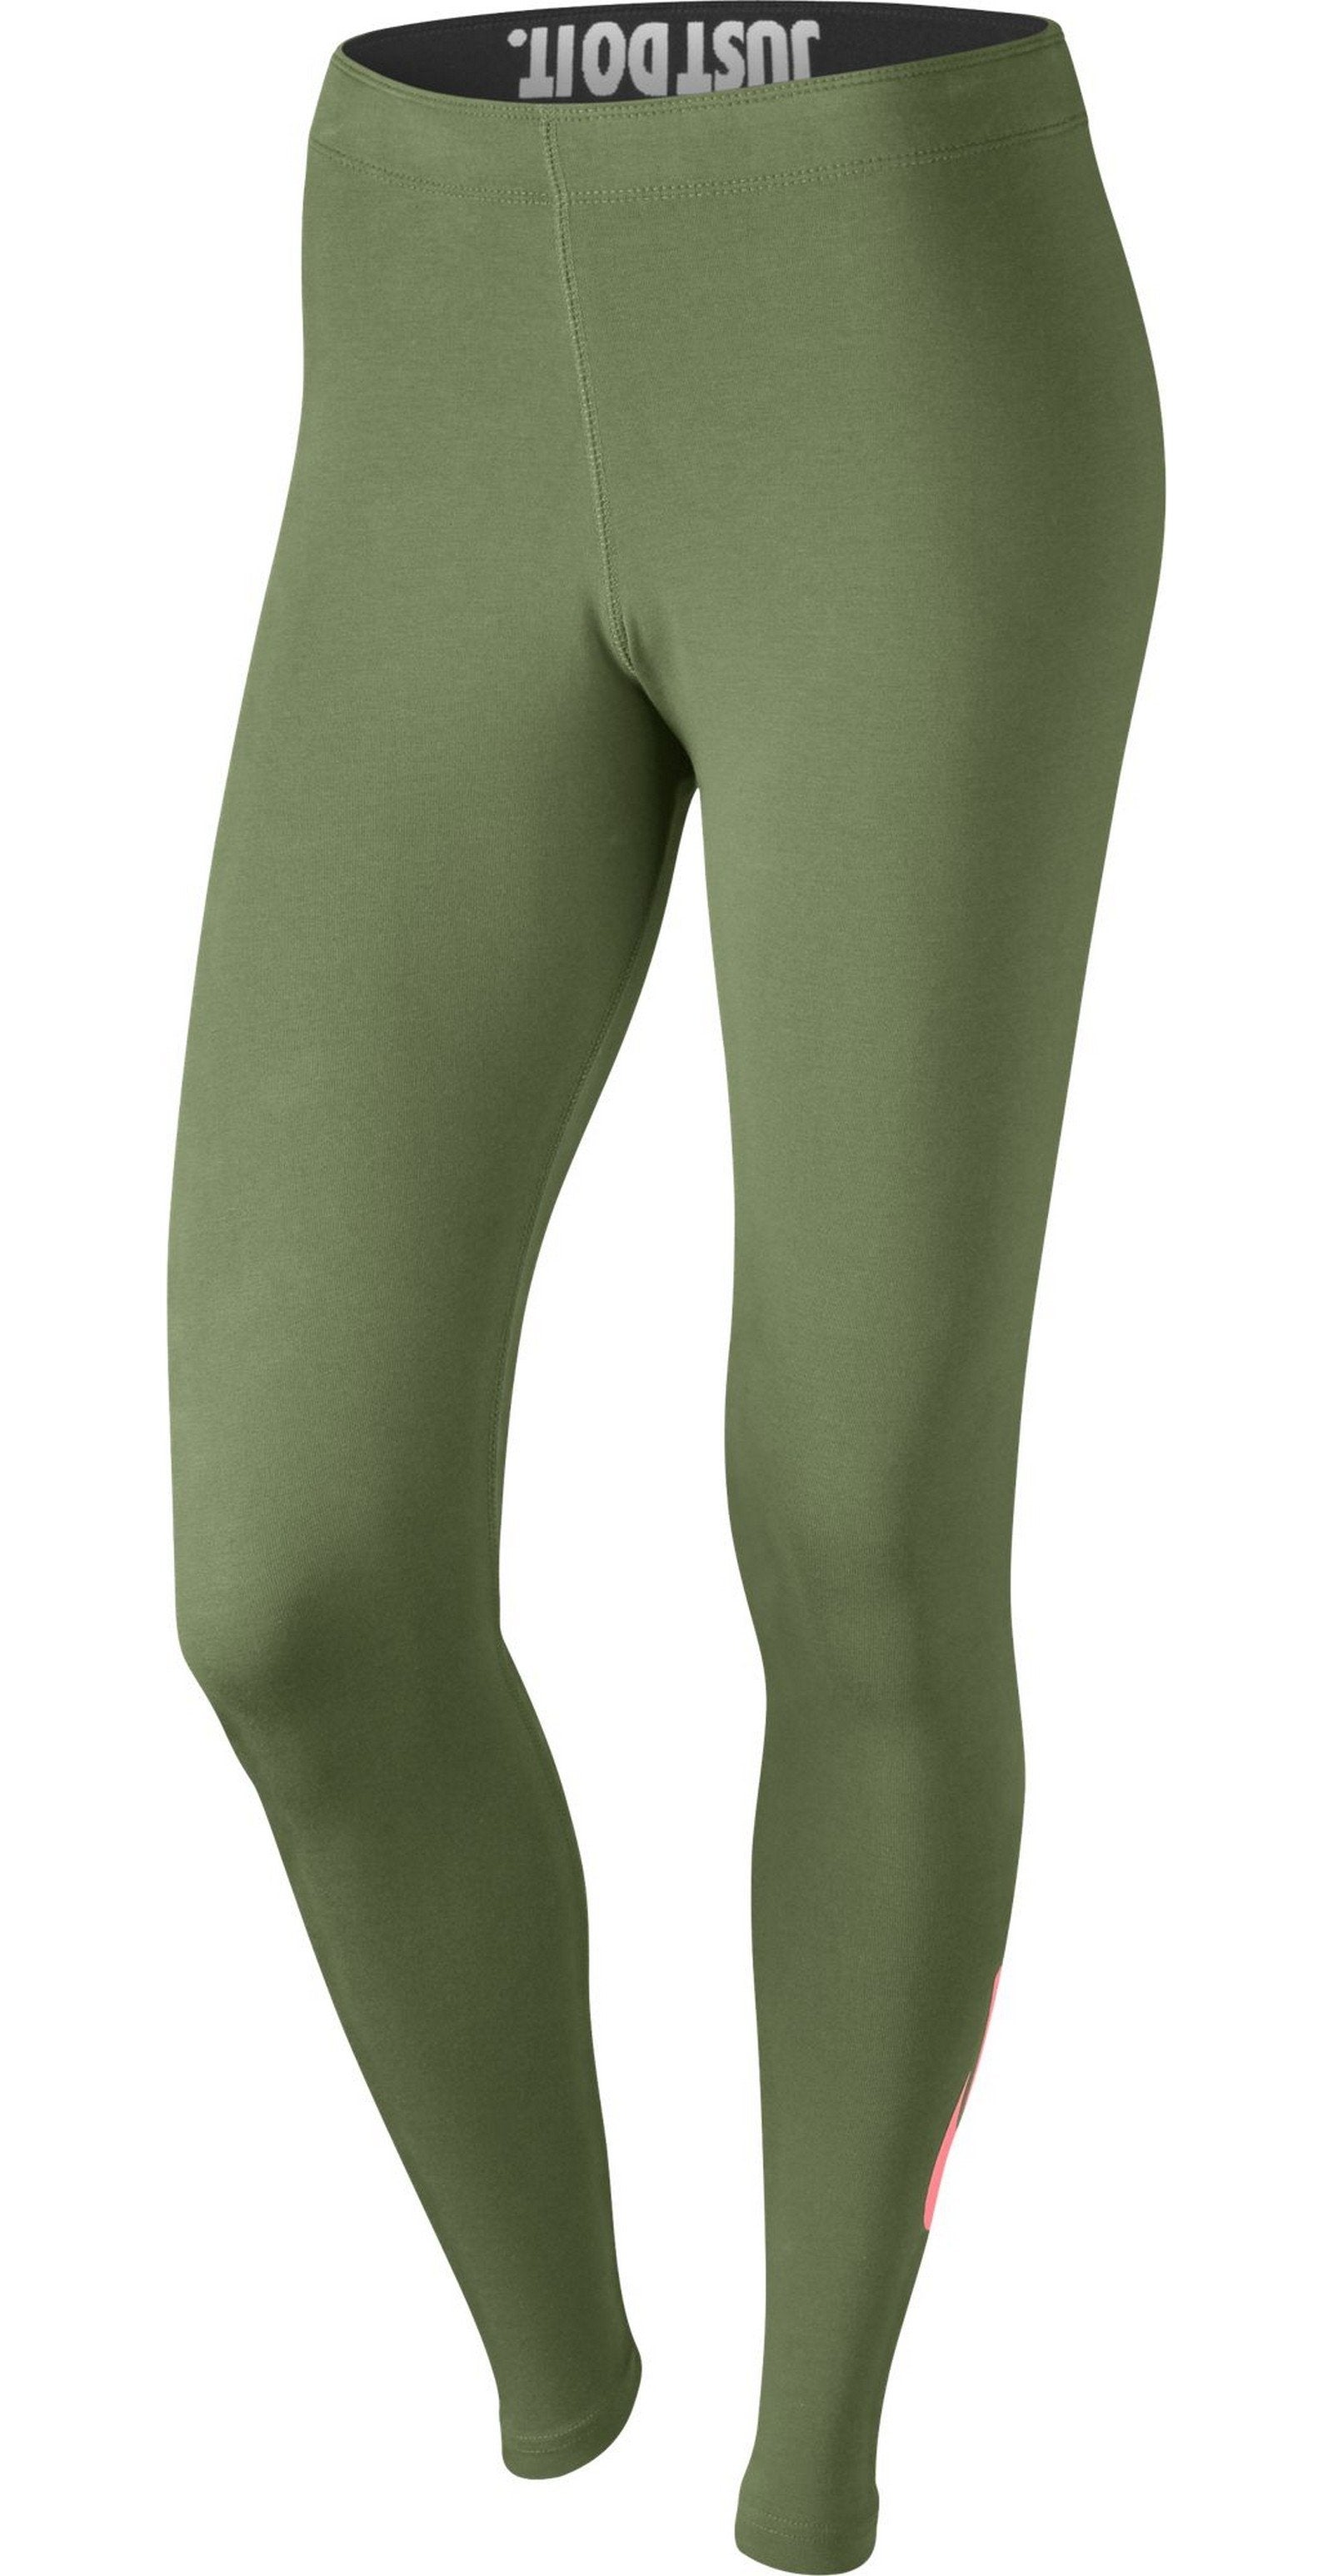 olive green leggings nike